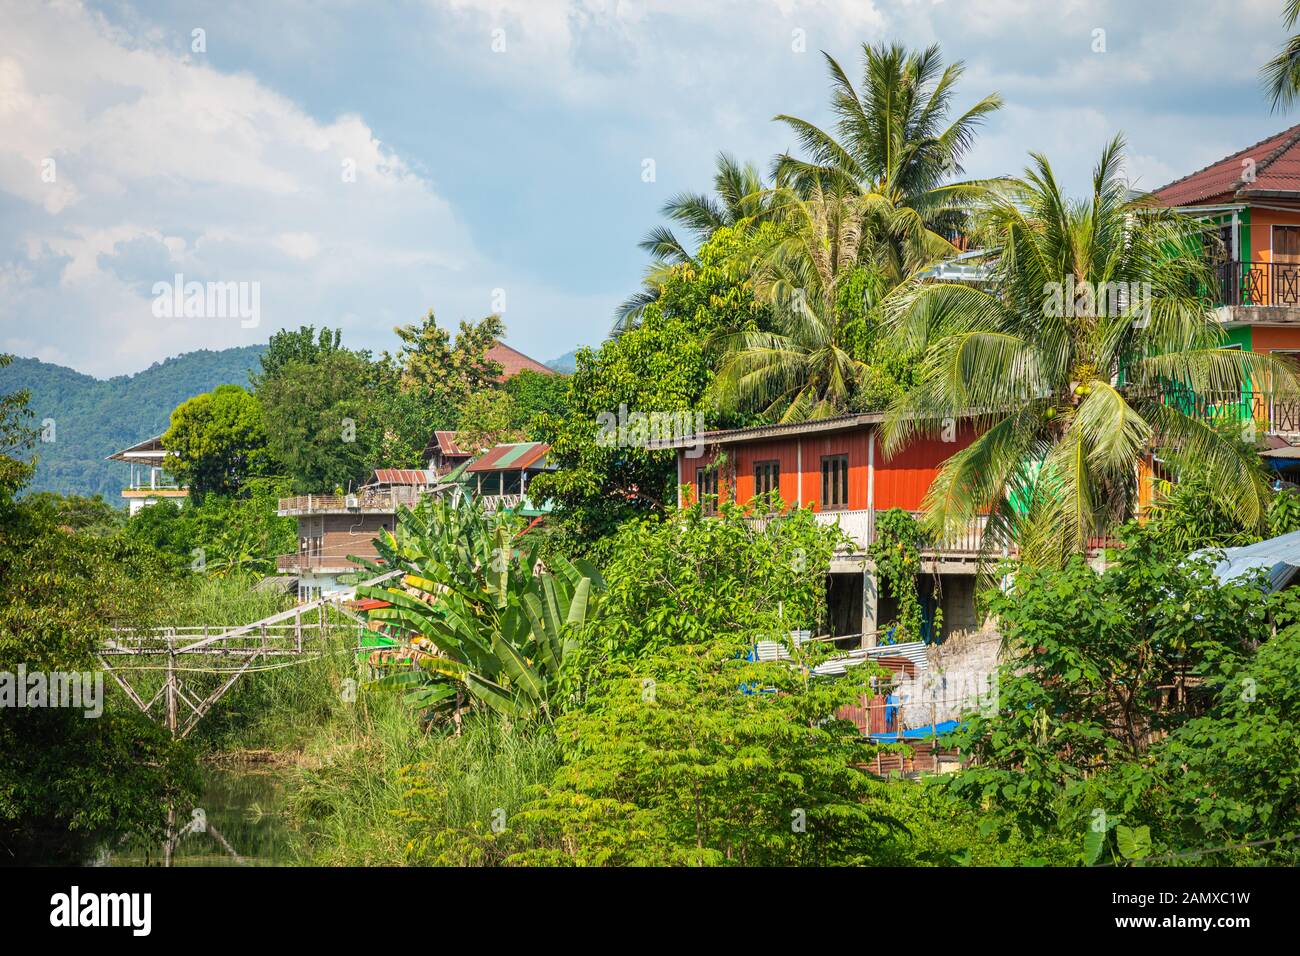 Tropical village Vang Vieng, Laos. Green palms. Stock Photo